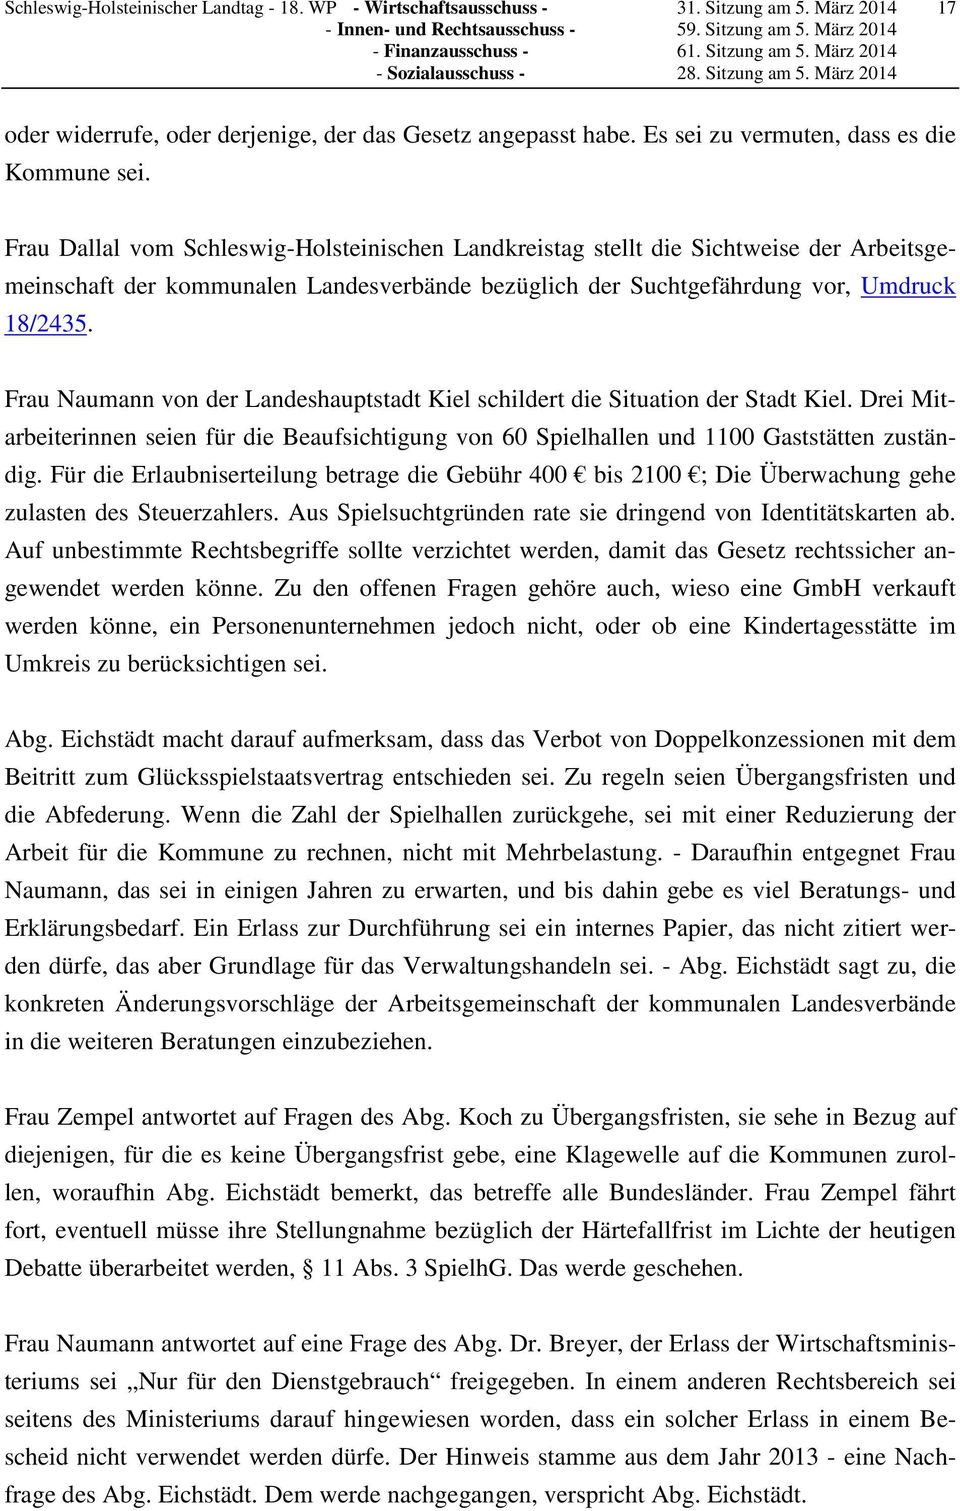 Frau Dallal vom Schleswig-Holsteinischen Landkreistag stellt die Sichtweise der Arbeitsgemeinschaft der kommunalen Landesverbände bezüglich der Suchtgefährdung vor, Umdruck 18/2435.